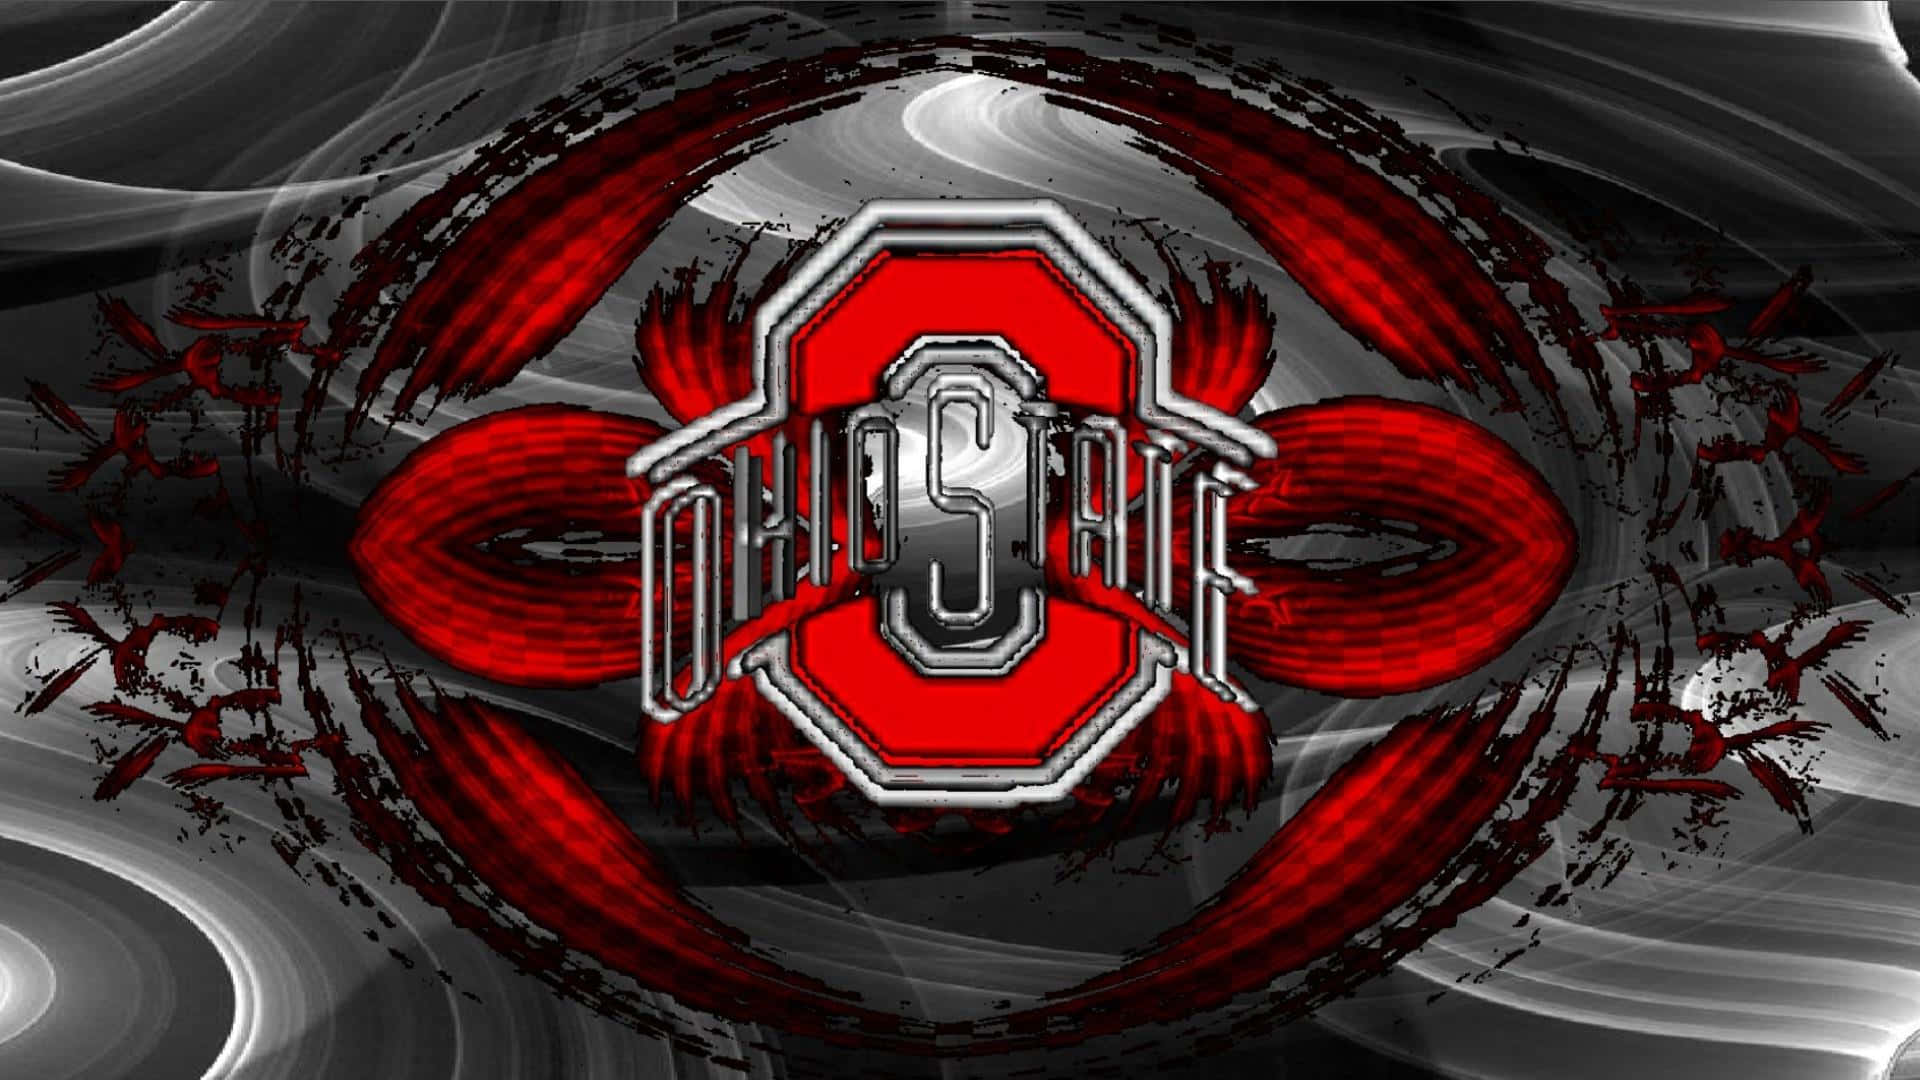 Ohiostate-logotyp I Rött Och Silver Med En Abstrakt Design. Wallpaper